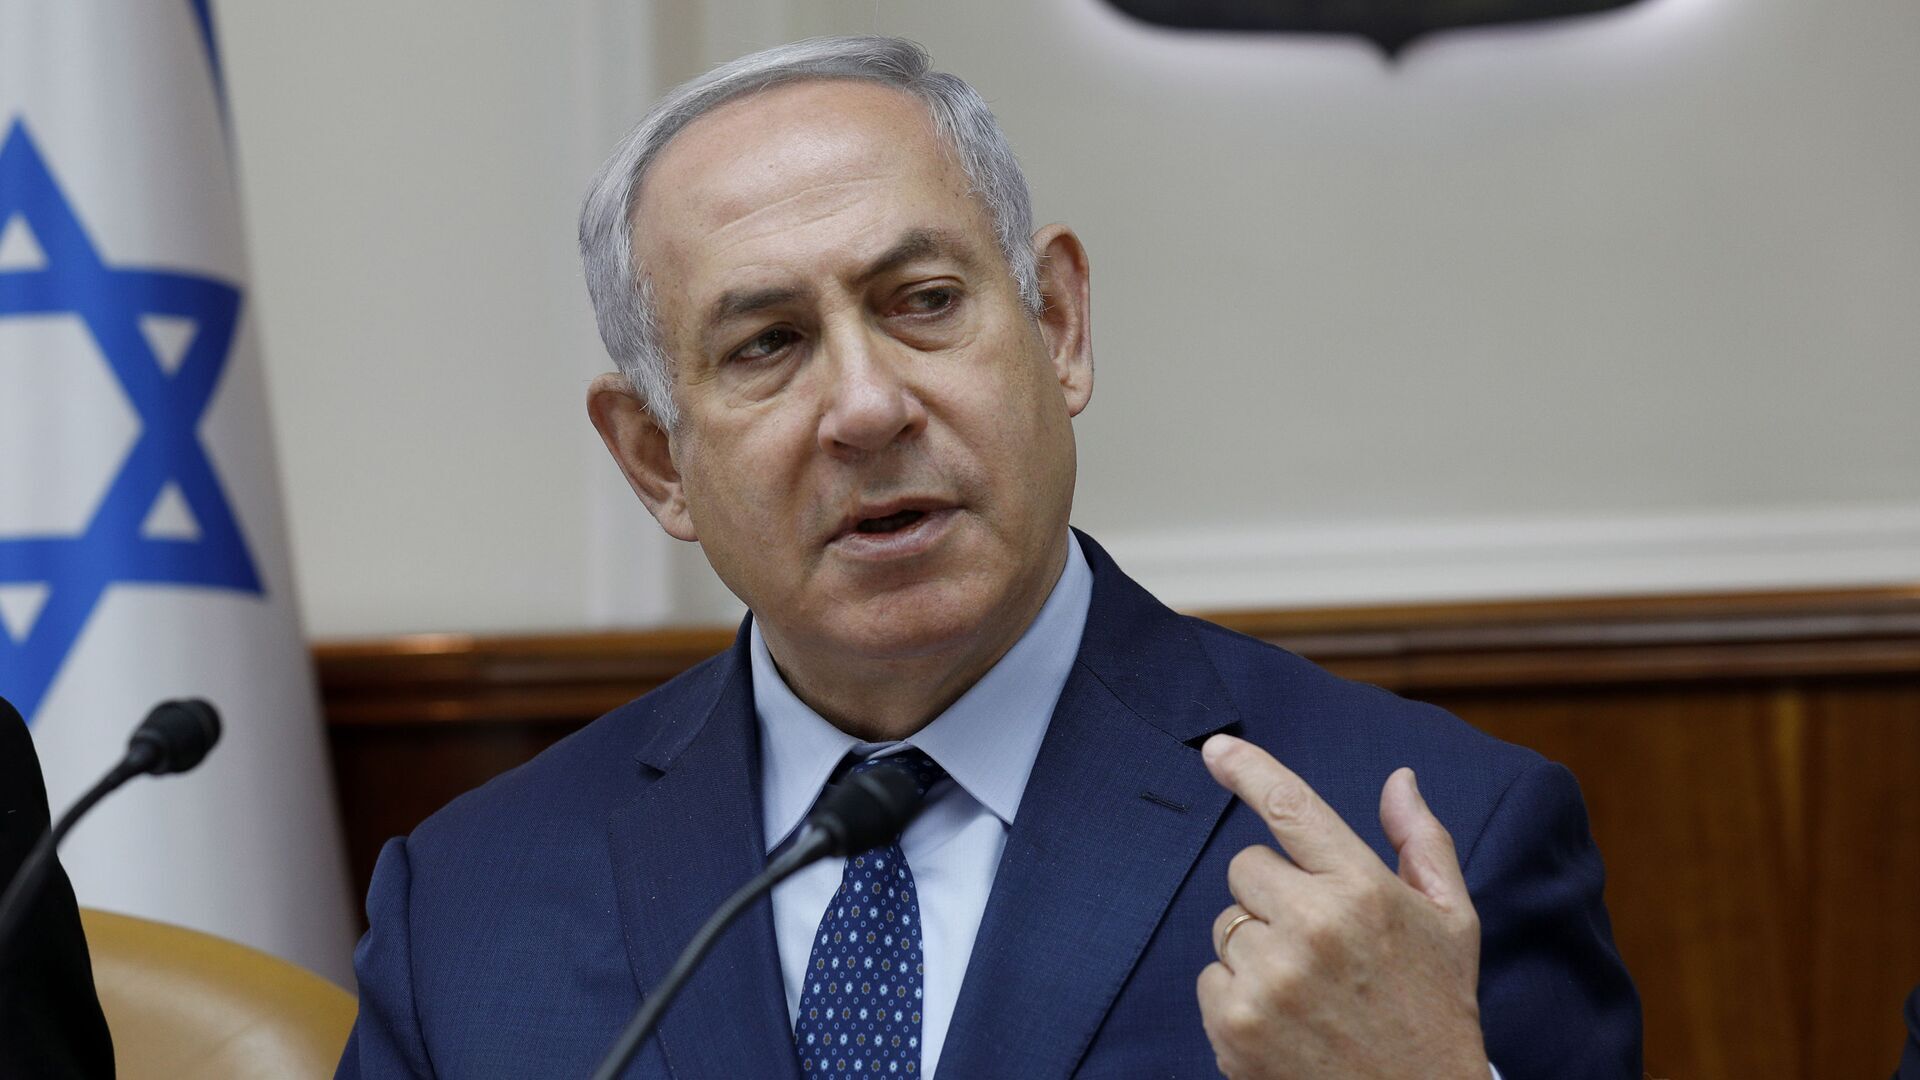 ادعای نتانیاهو: قصدی برای اشغال دائمی غزه یا آواره کردن مردم نداریم